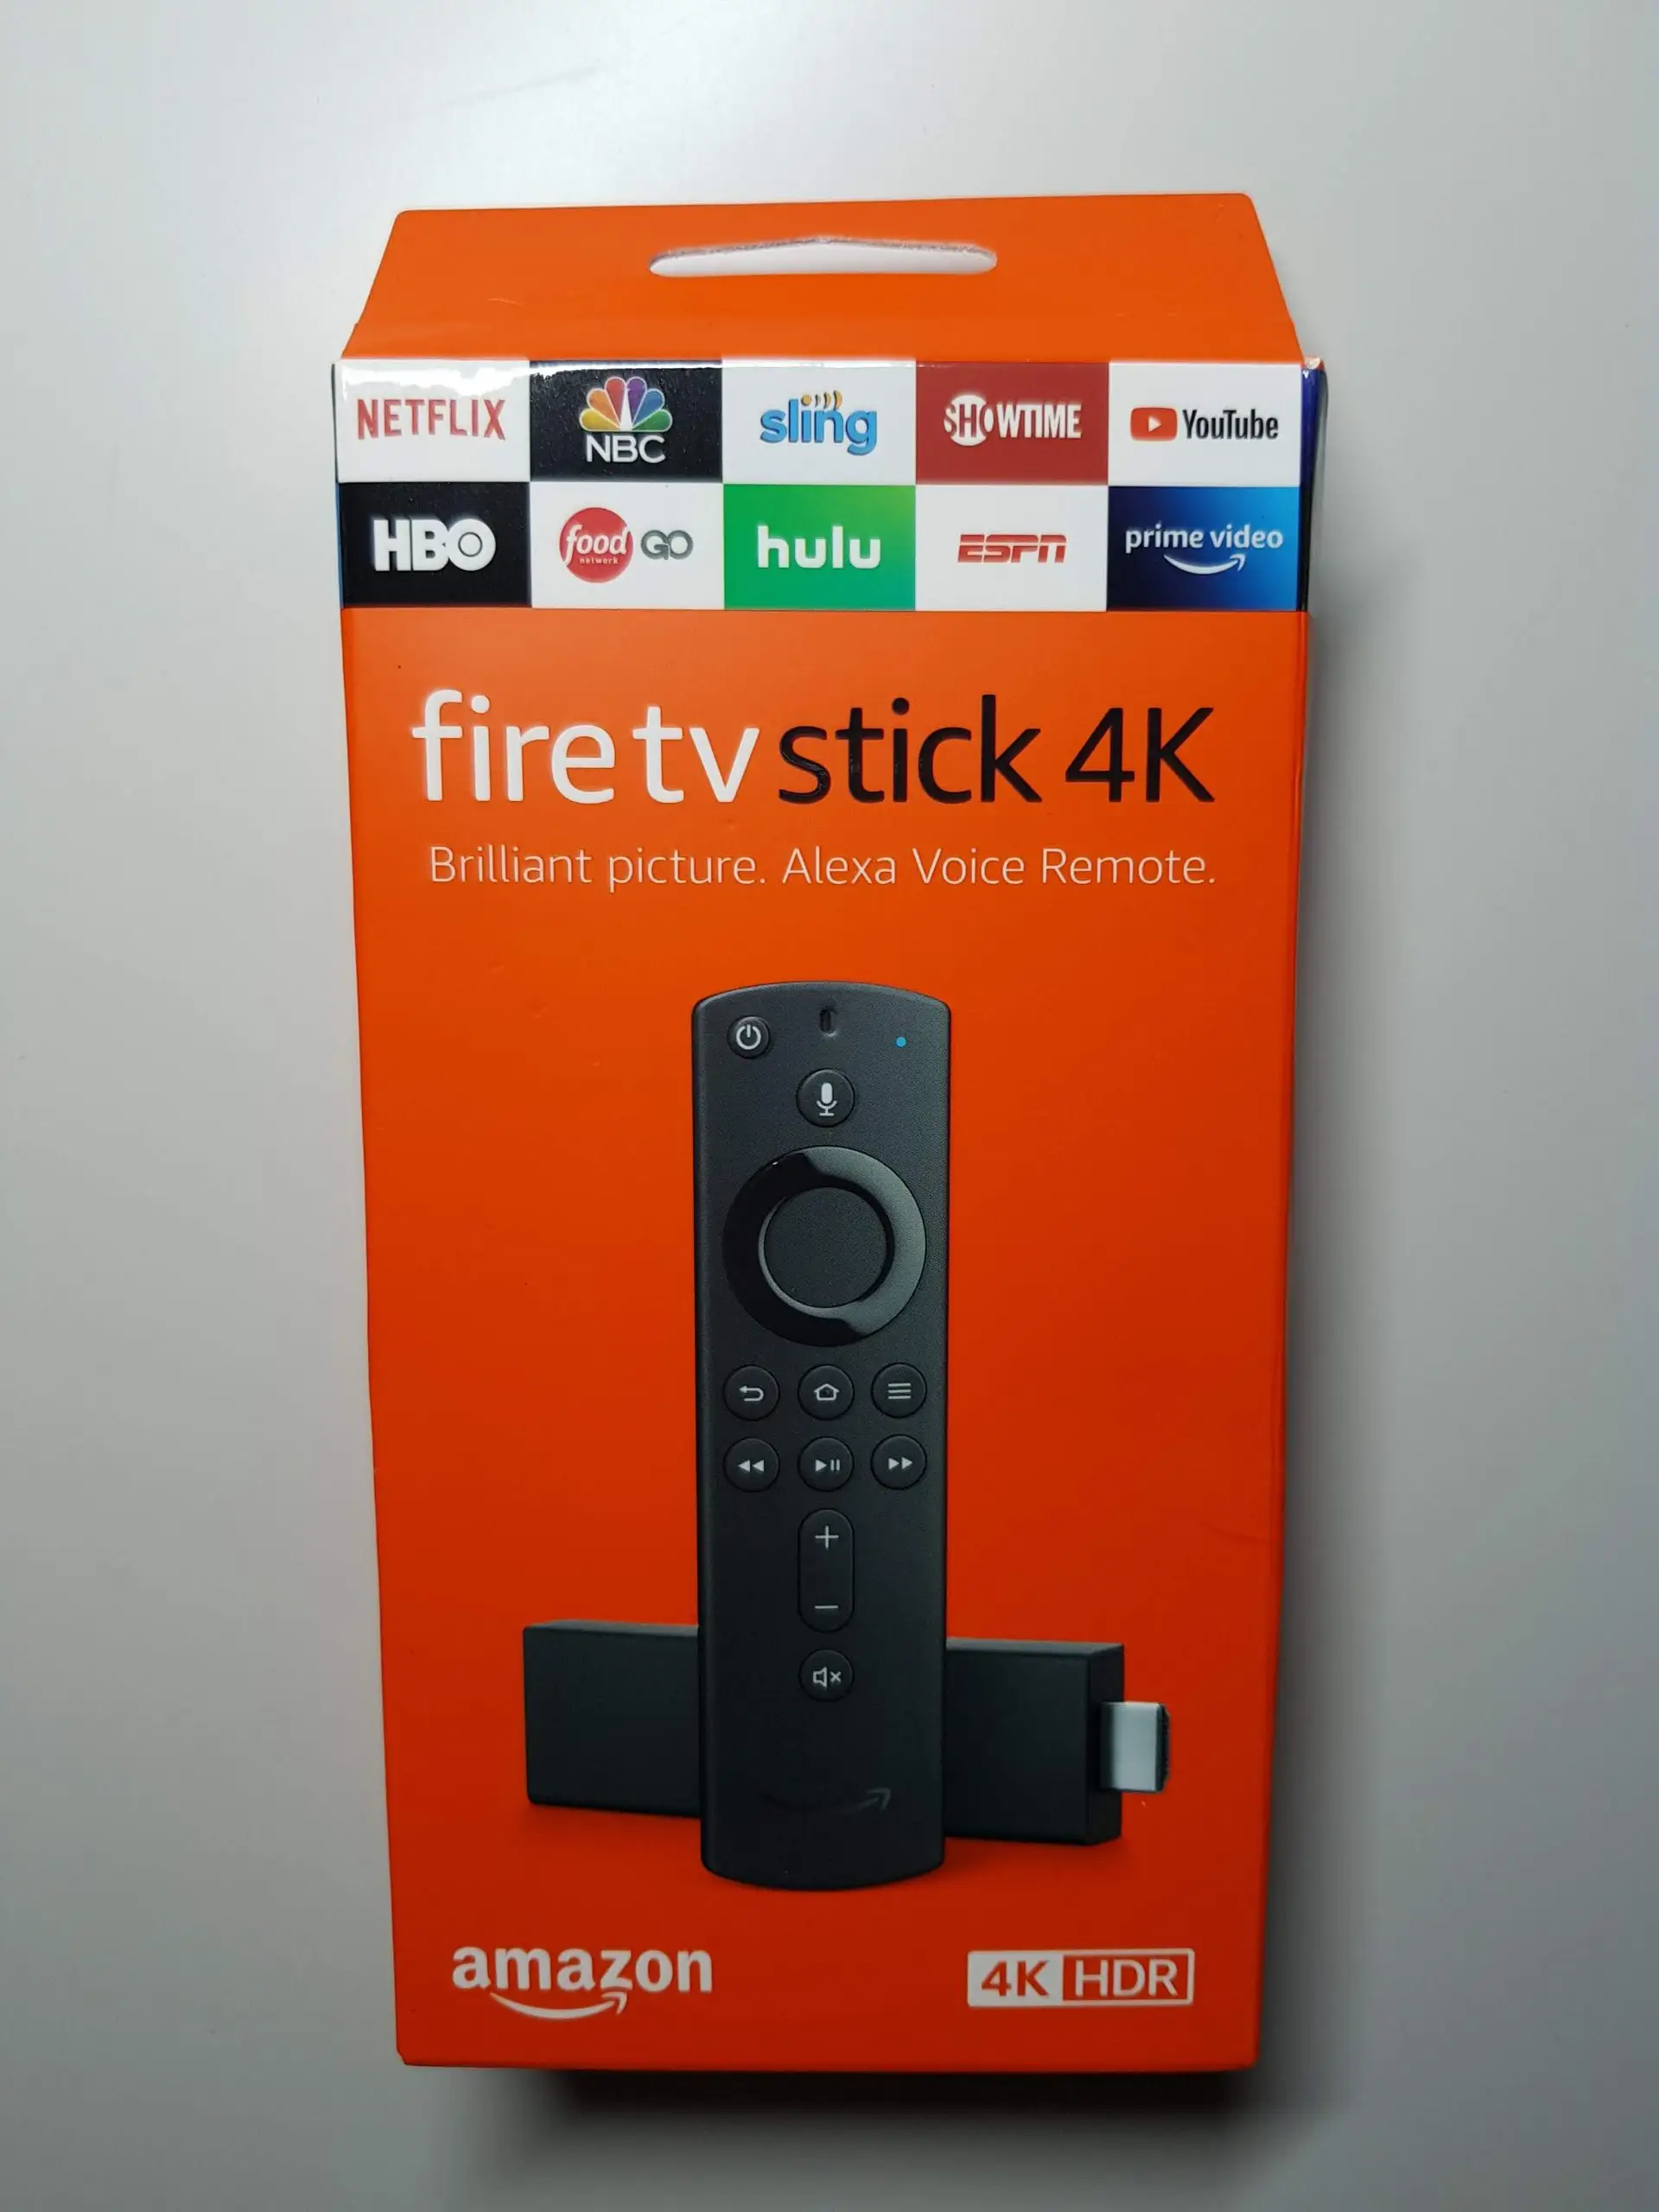 Großhandelspreis neuer Amazon TV Fire Stick 4K Ultra HD Firestick mit Alexa Sprachfernbedienung versiegelt in It's Box Original